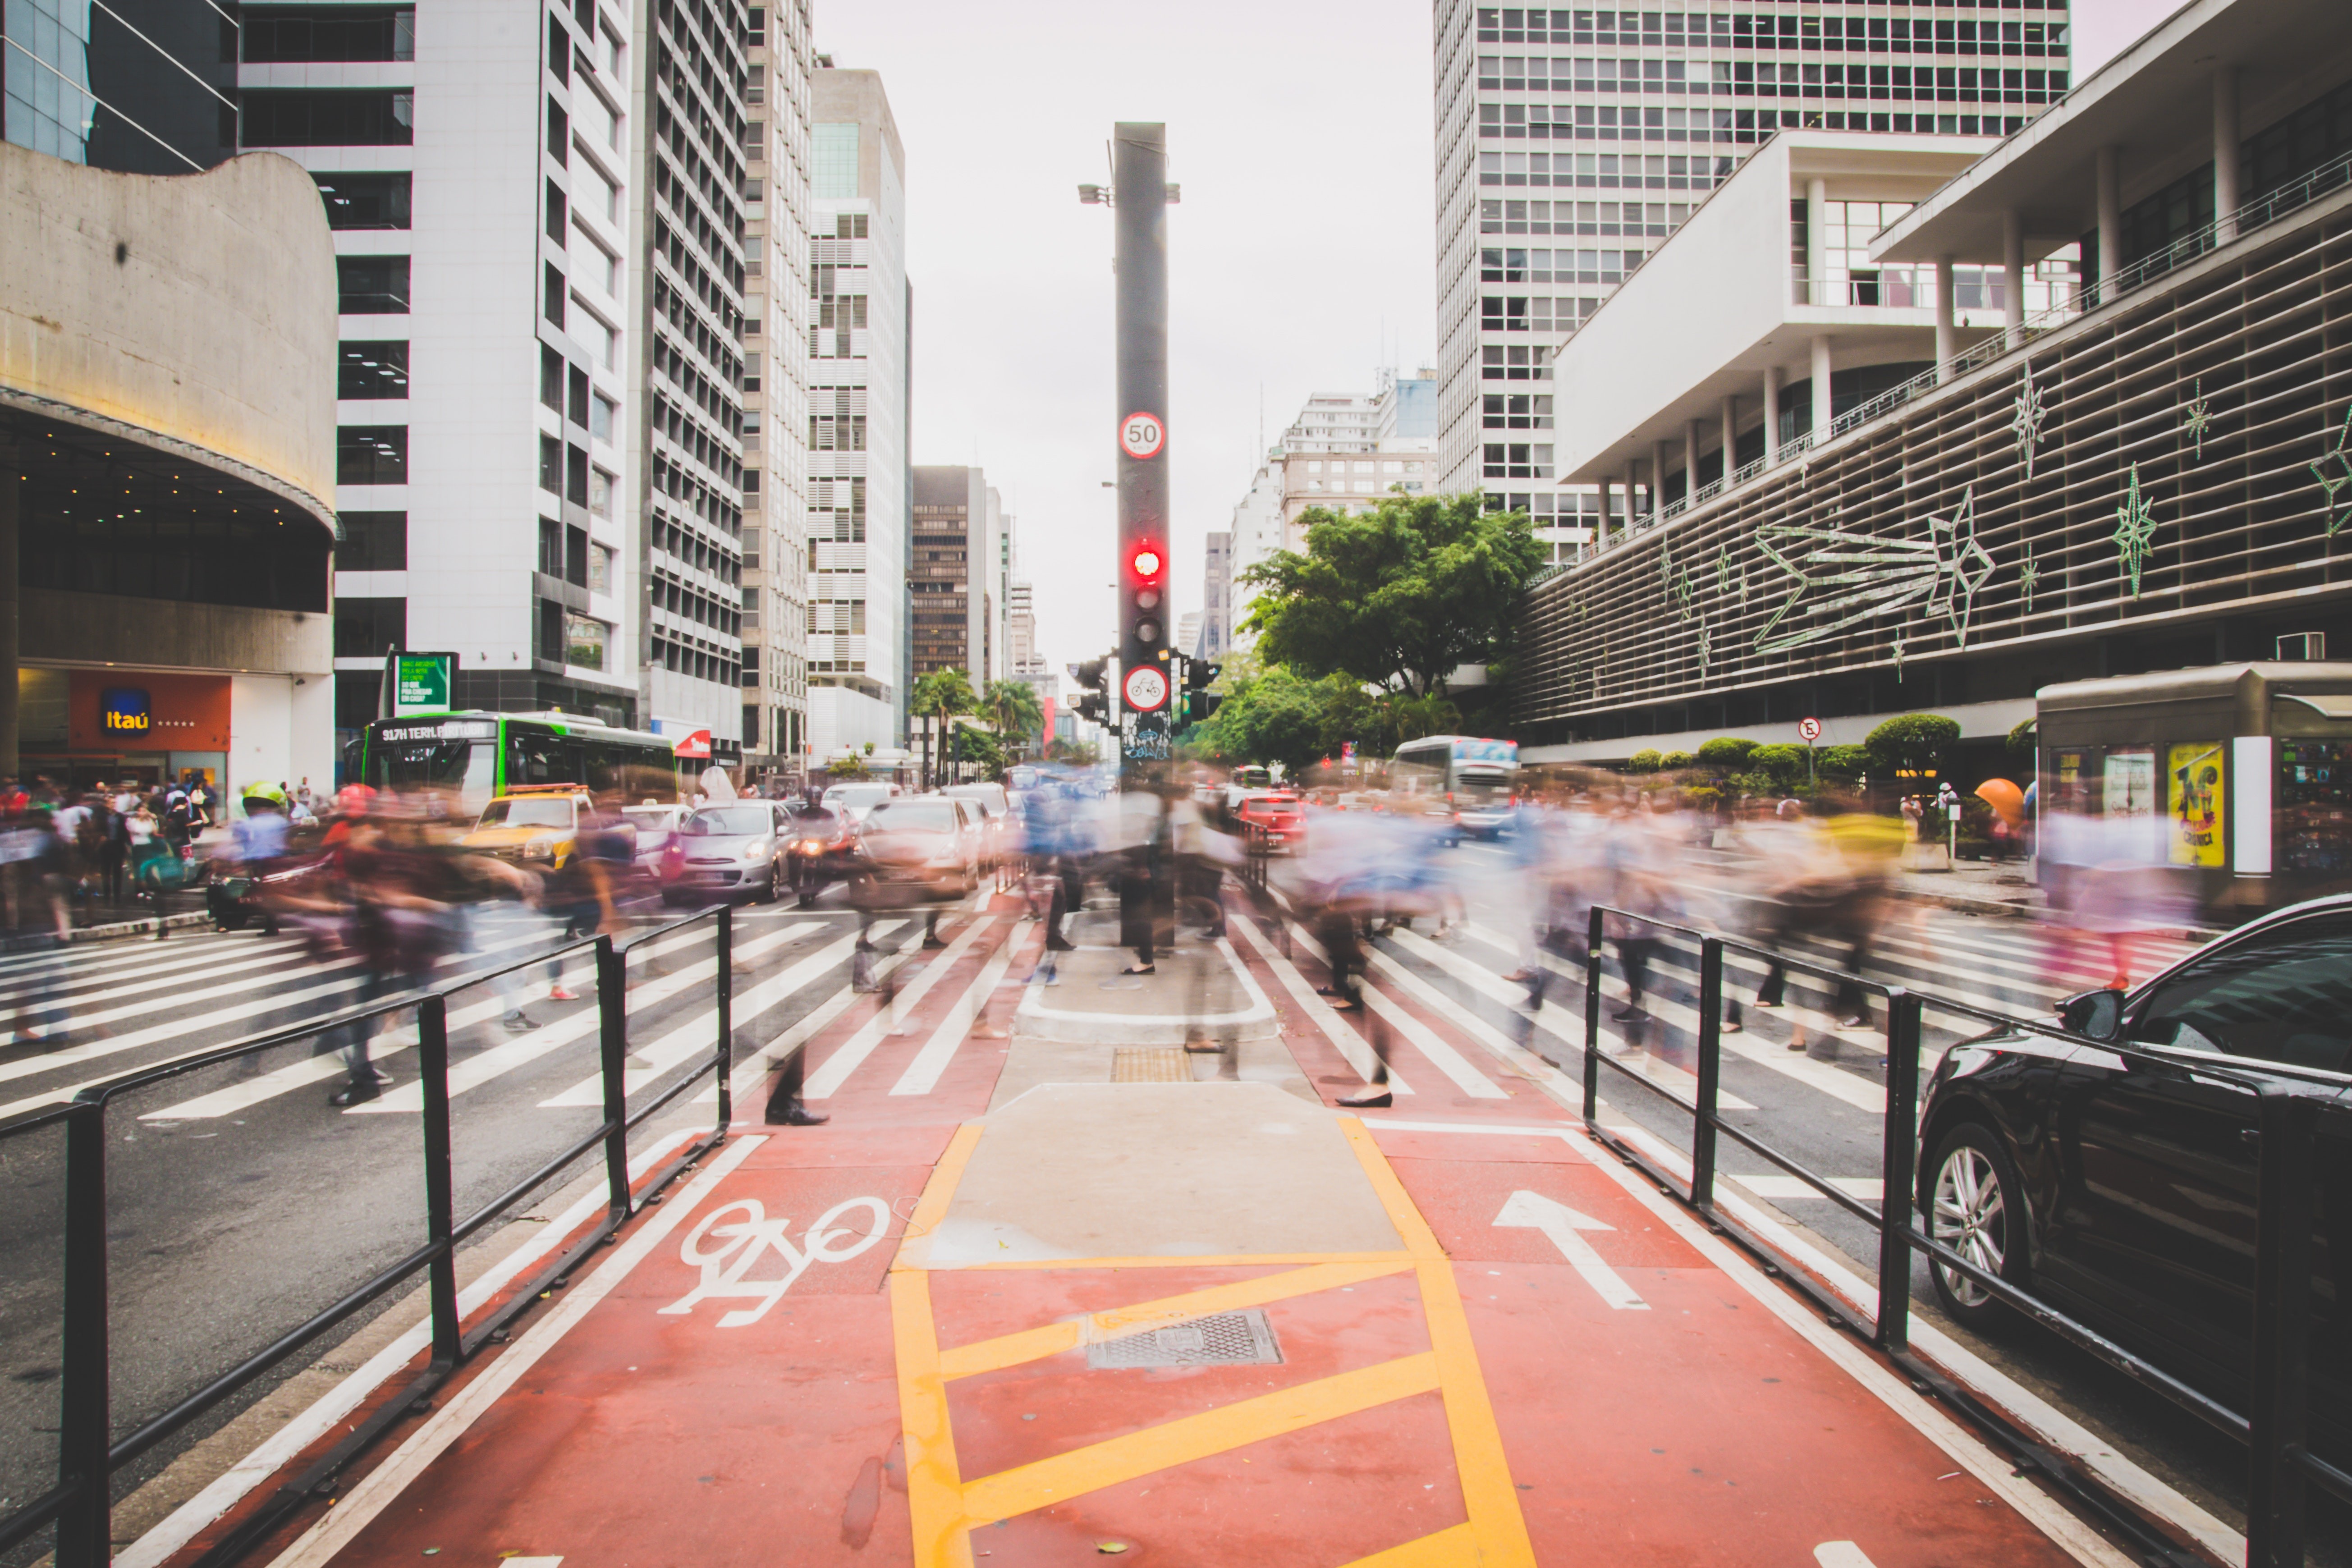 Centros urbanos podem ser tornar o principal foco de disseminação do Covid-19. São Paulo e Rio de Janeiro já têm transmissão sustentada (Foto: pexels)